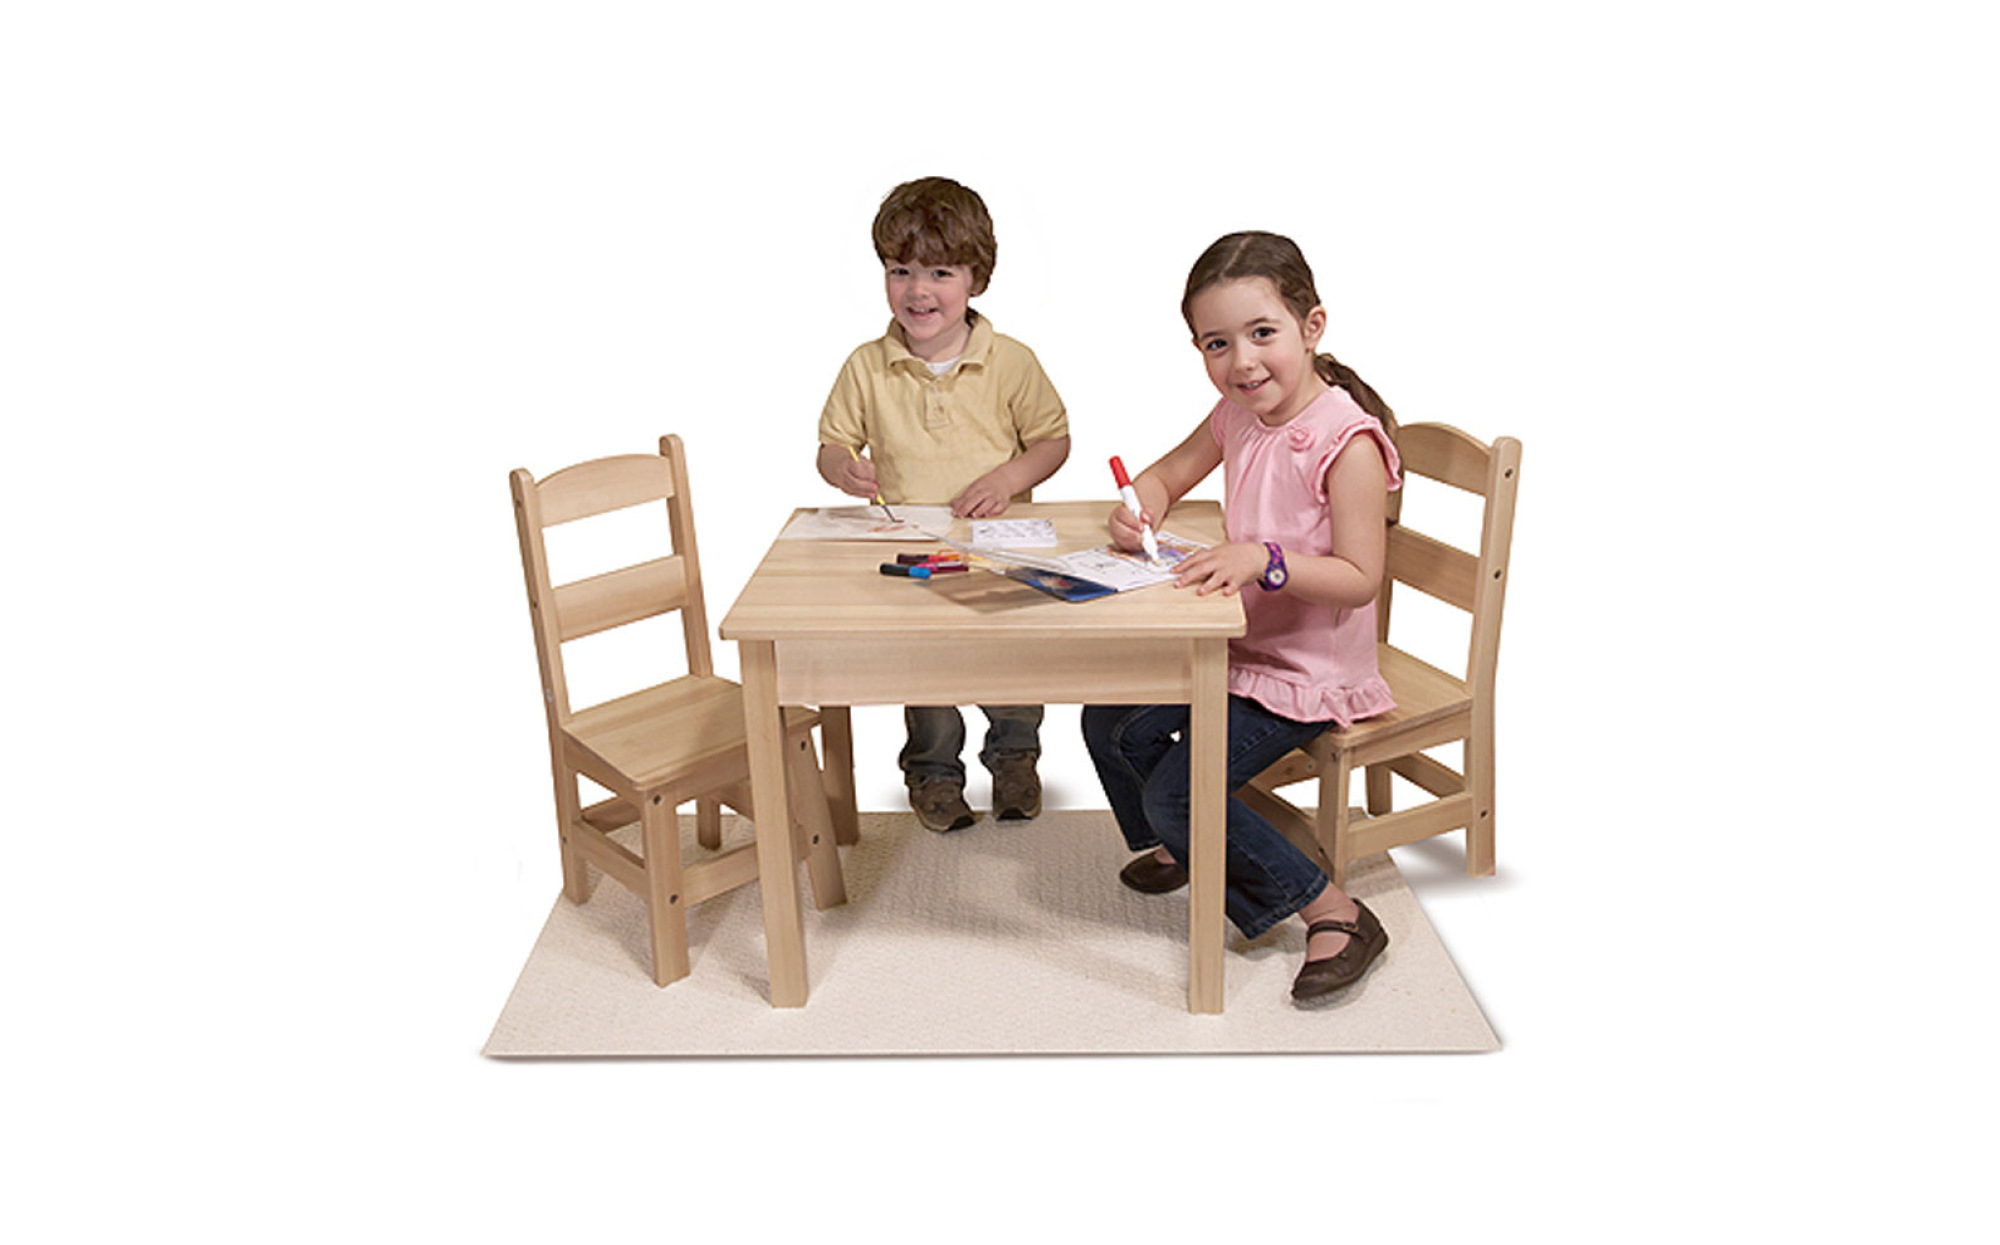 Столик Melissa Doug. Детский стульчик со столиком для игр. Столик детский со стульчиками. Детский деревянный стол. Играть со столом